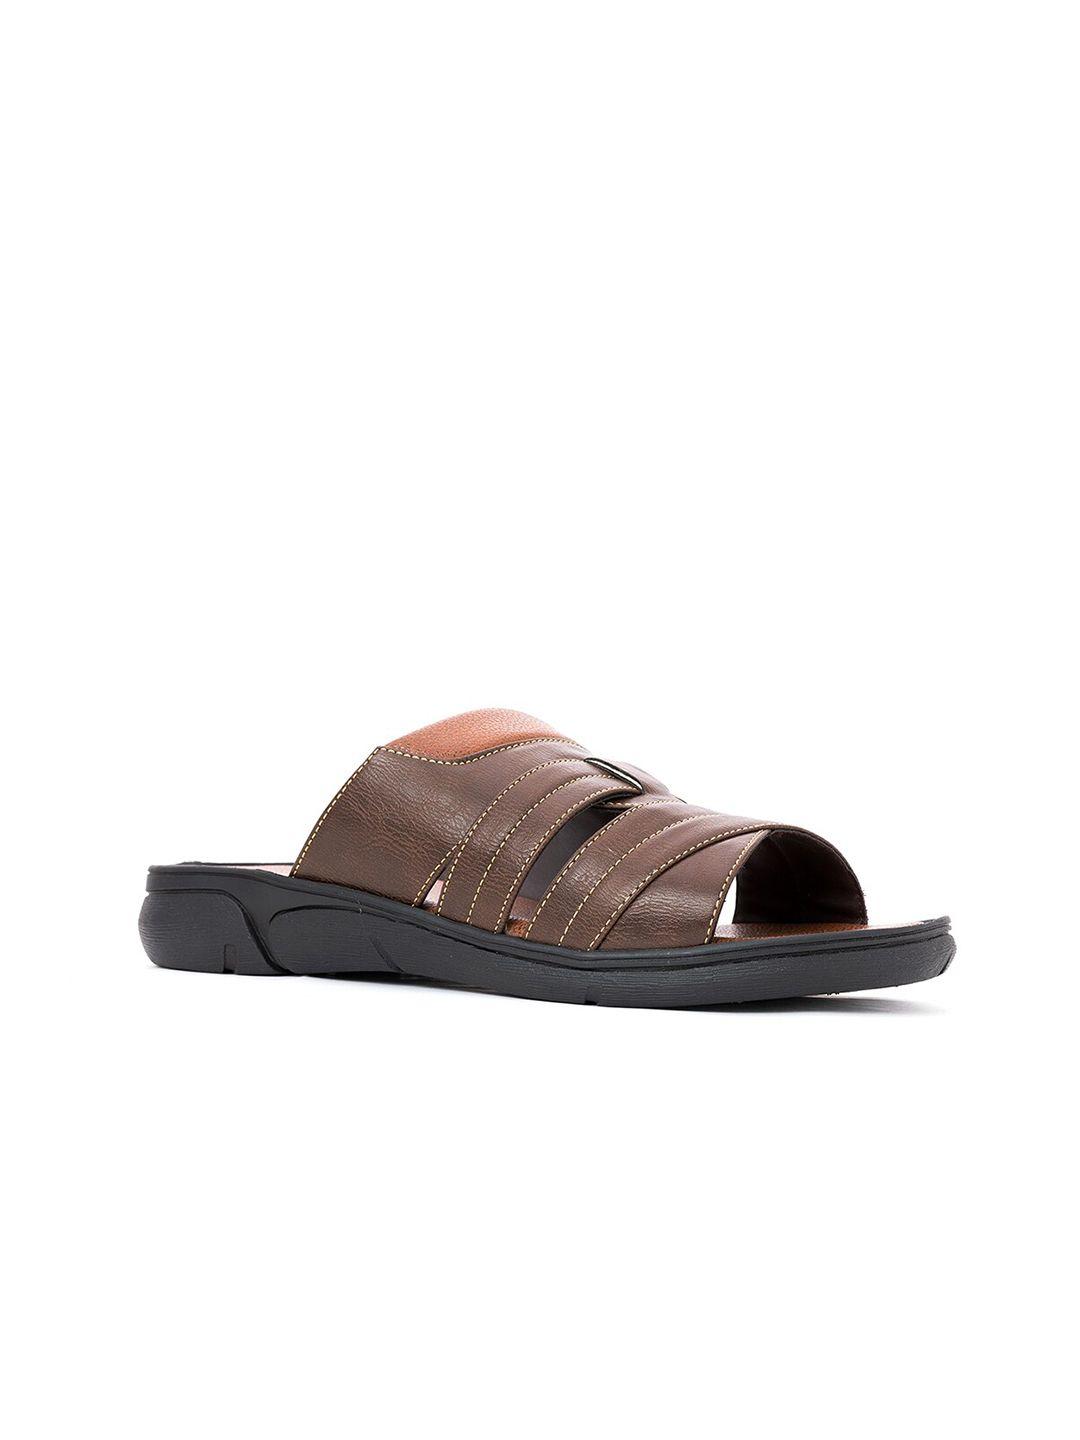 khadims men black & brown comfort sandals